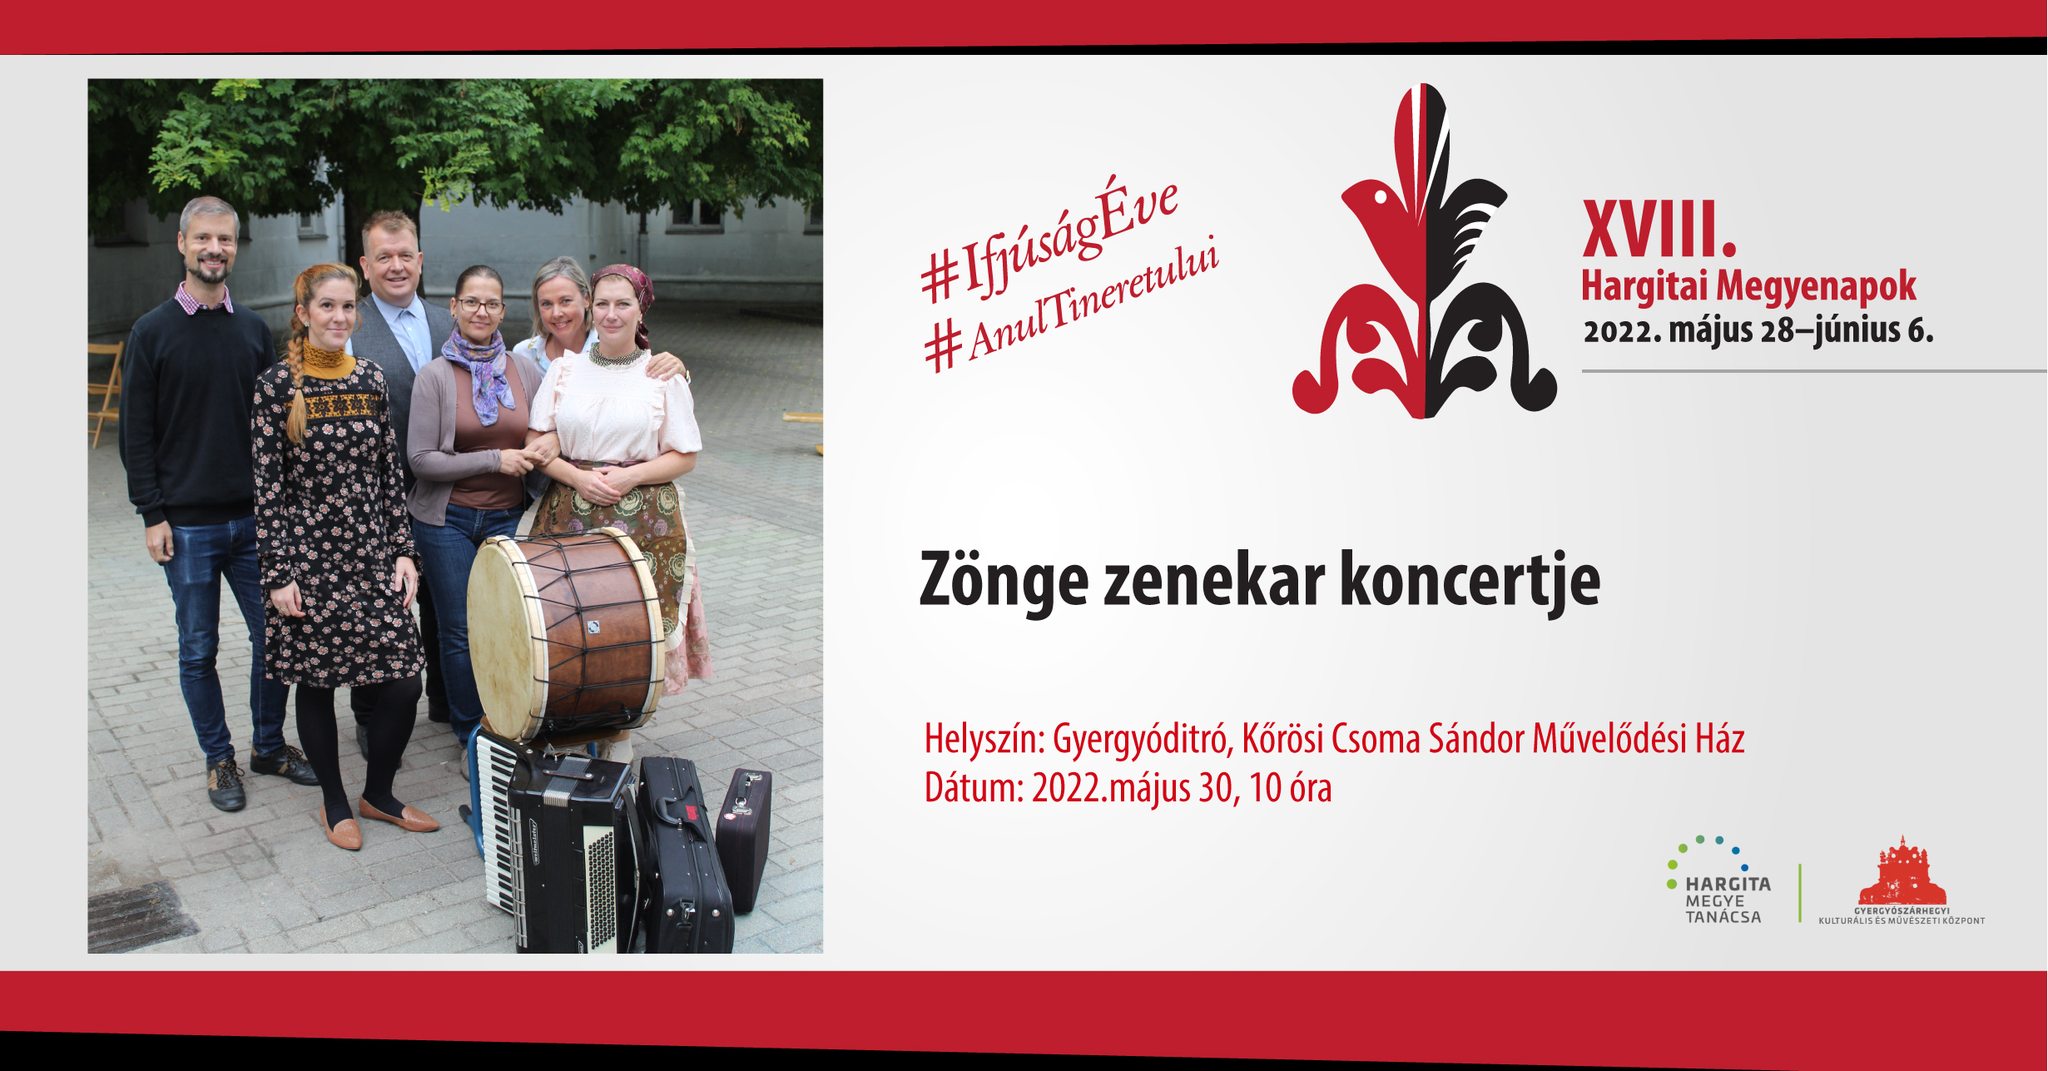 Zönge Concert